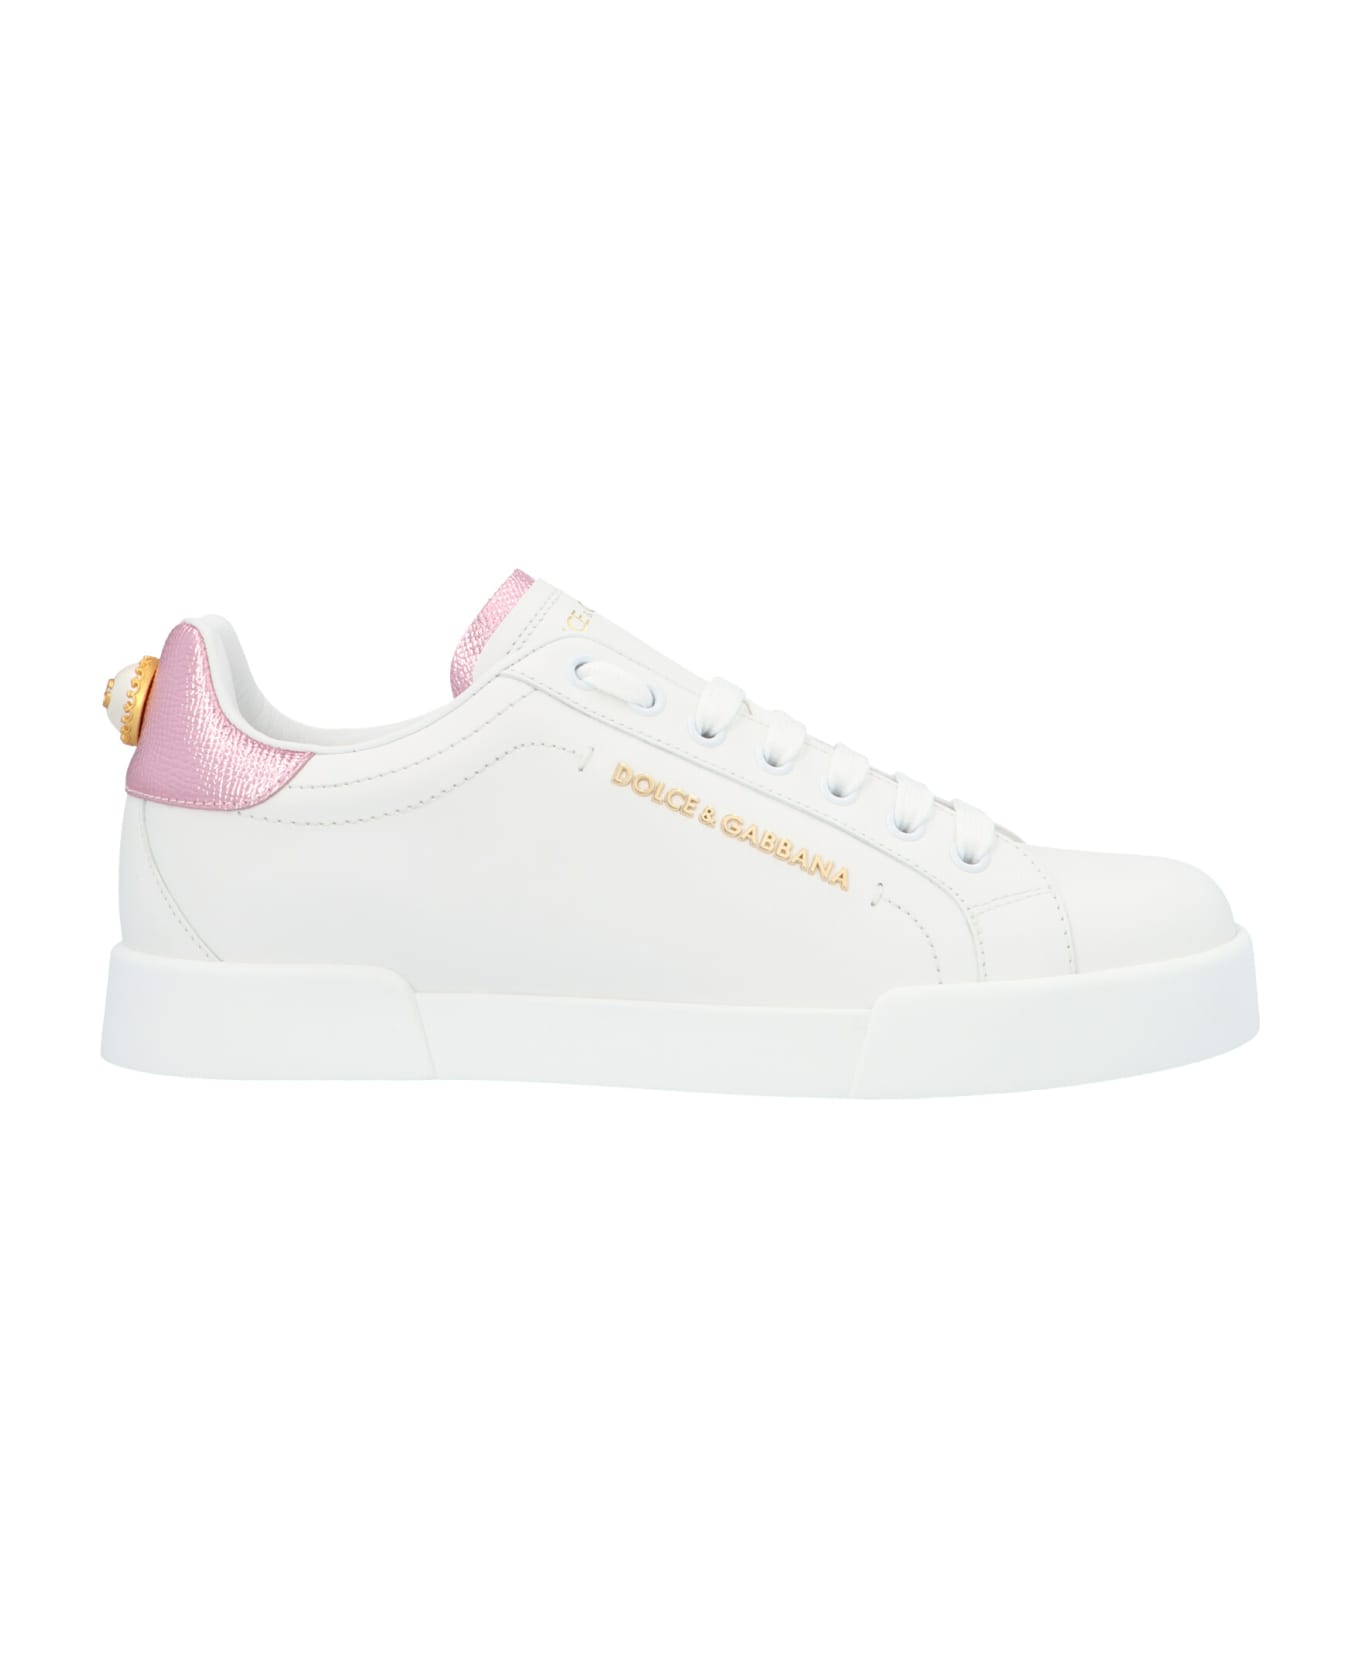 Dolce & Gabbana 'portofino' Shoes - Bianco/rosa